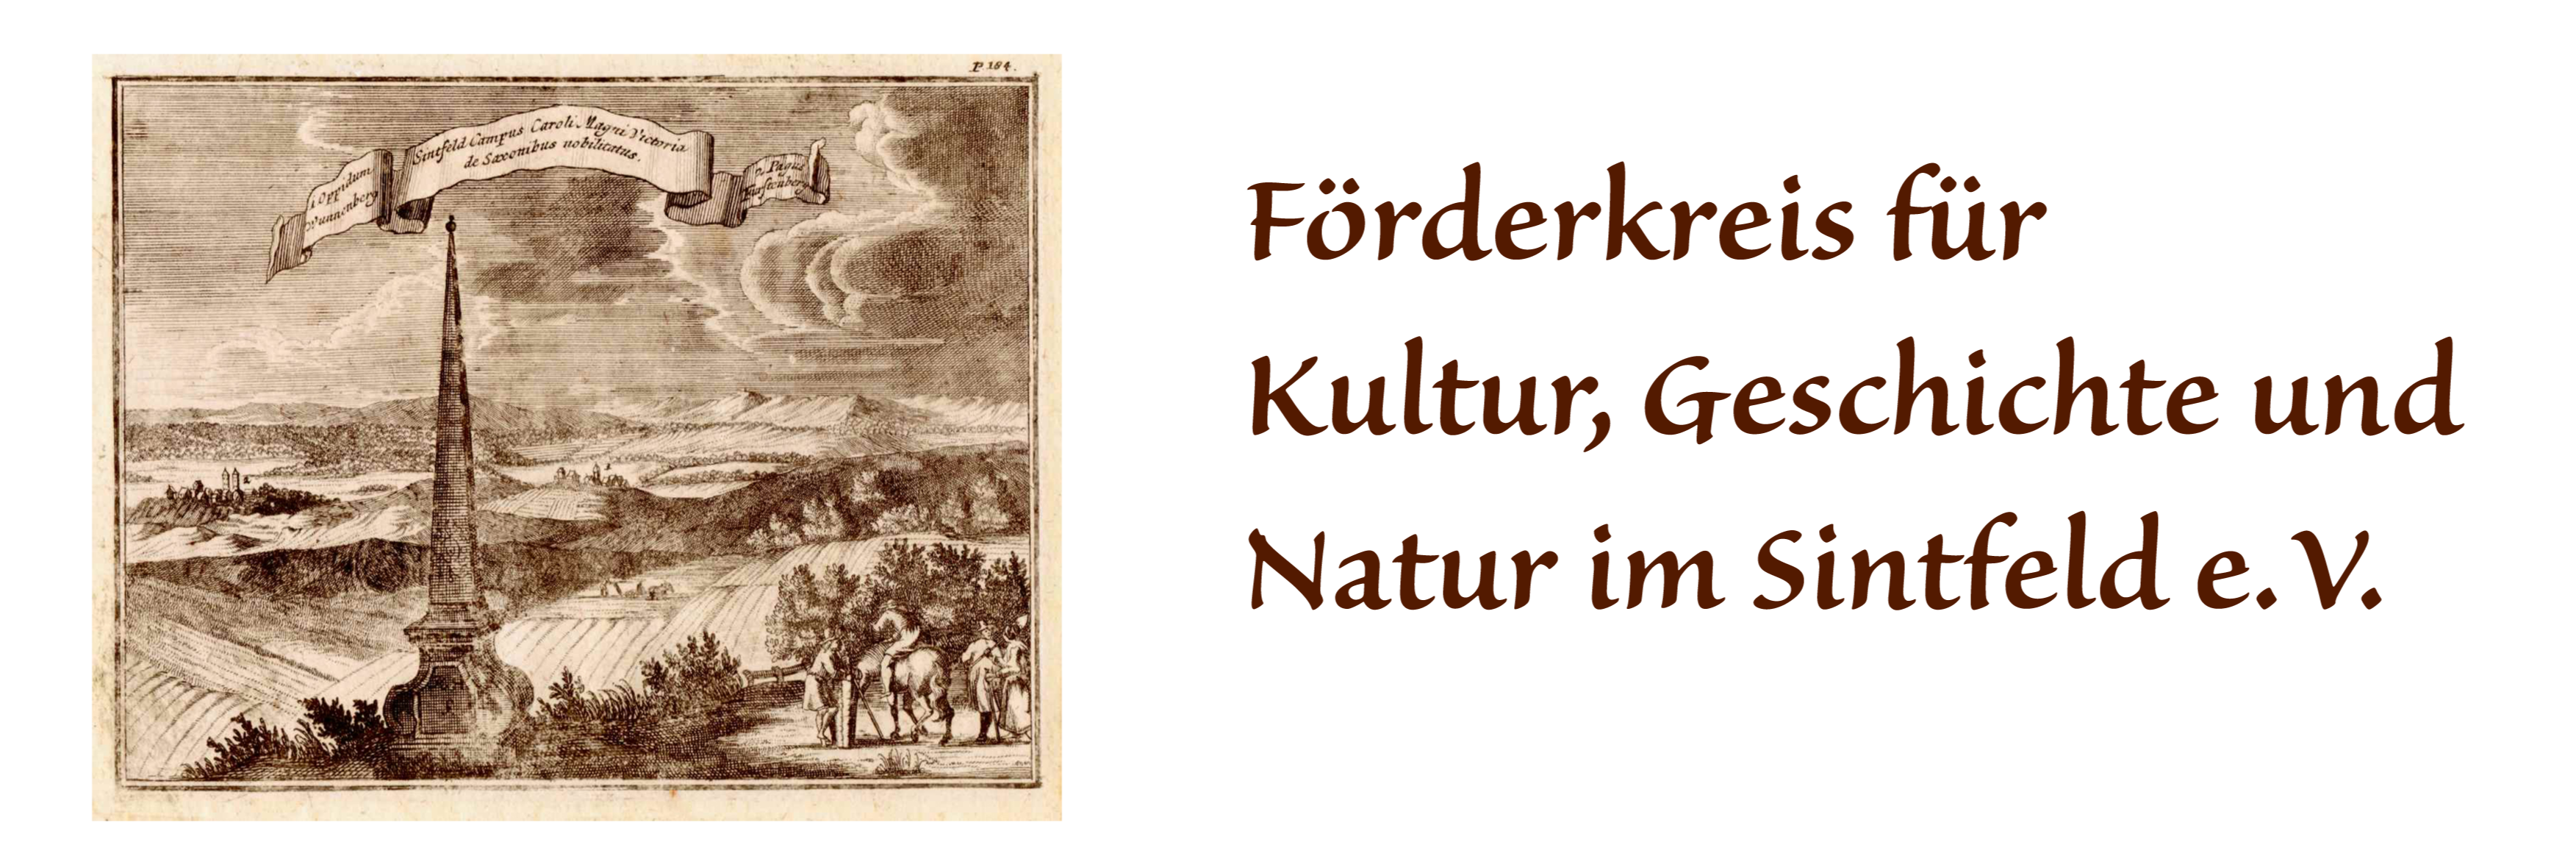 Foerderkreis Fuerstenberg